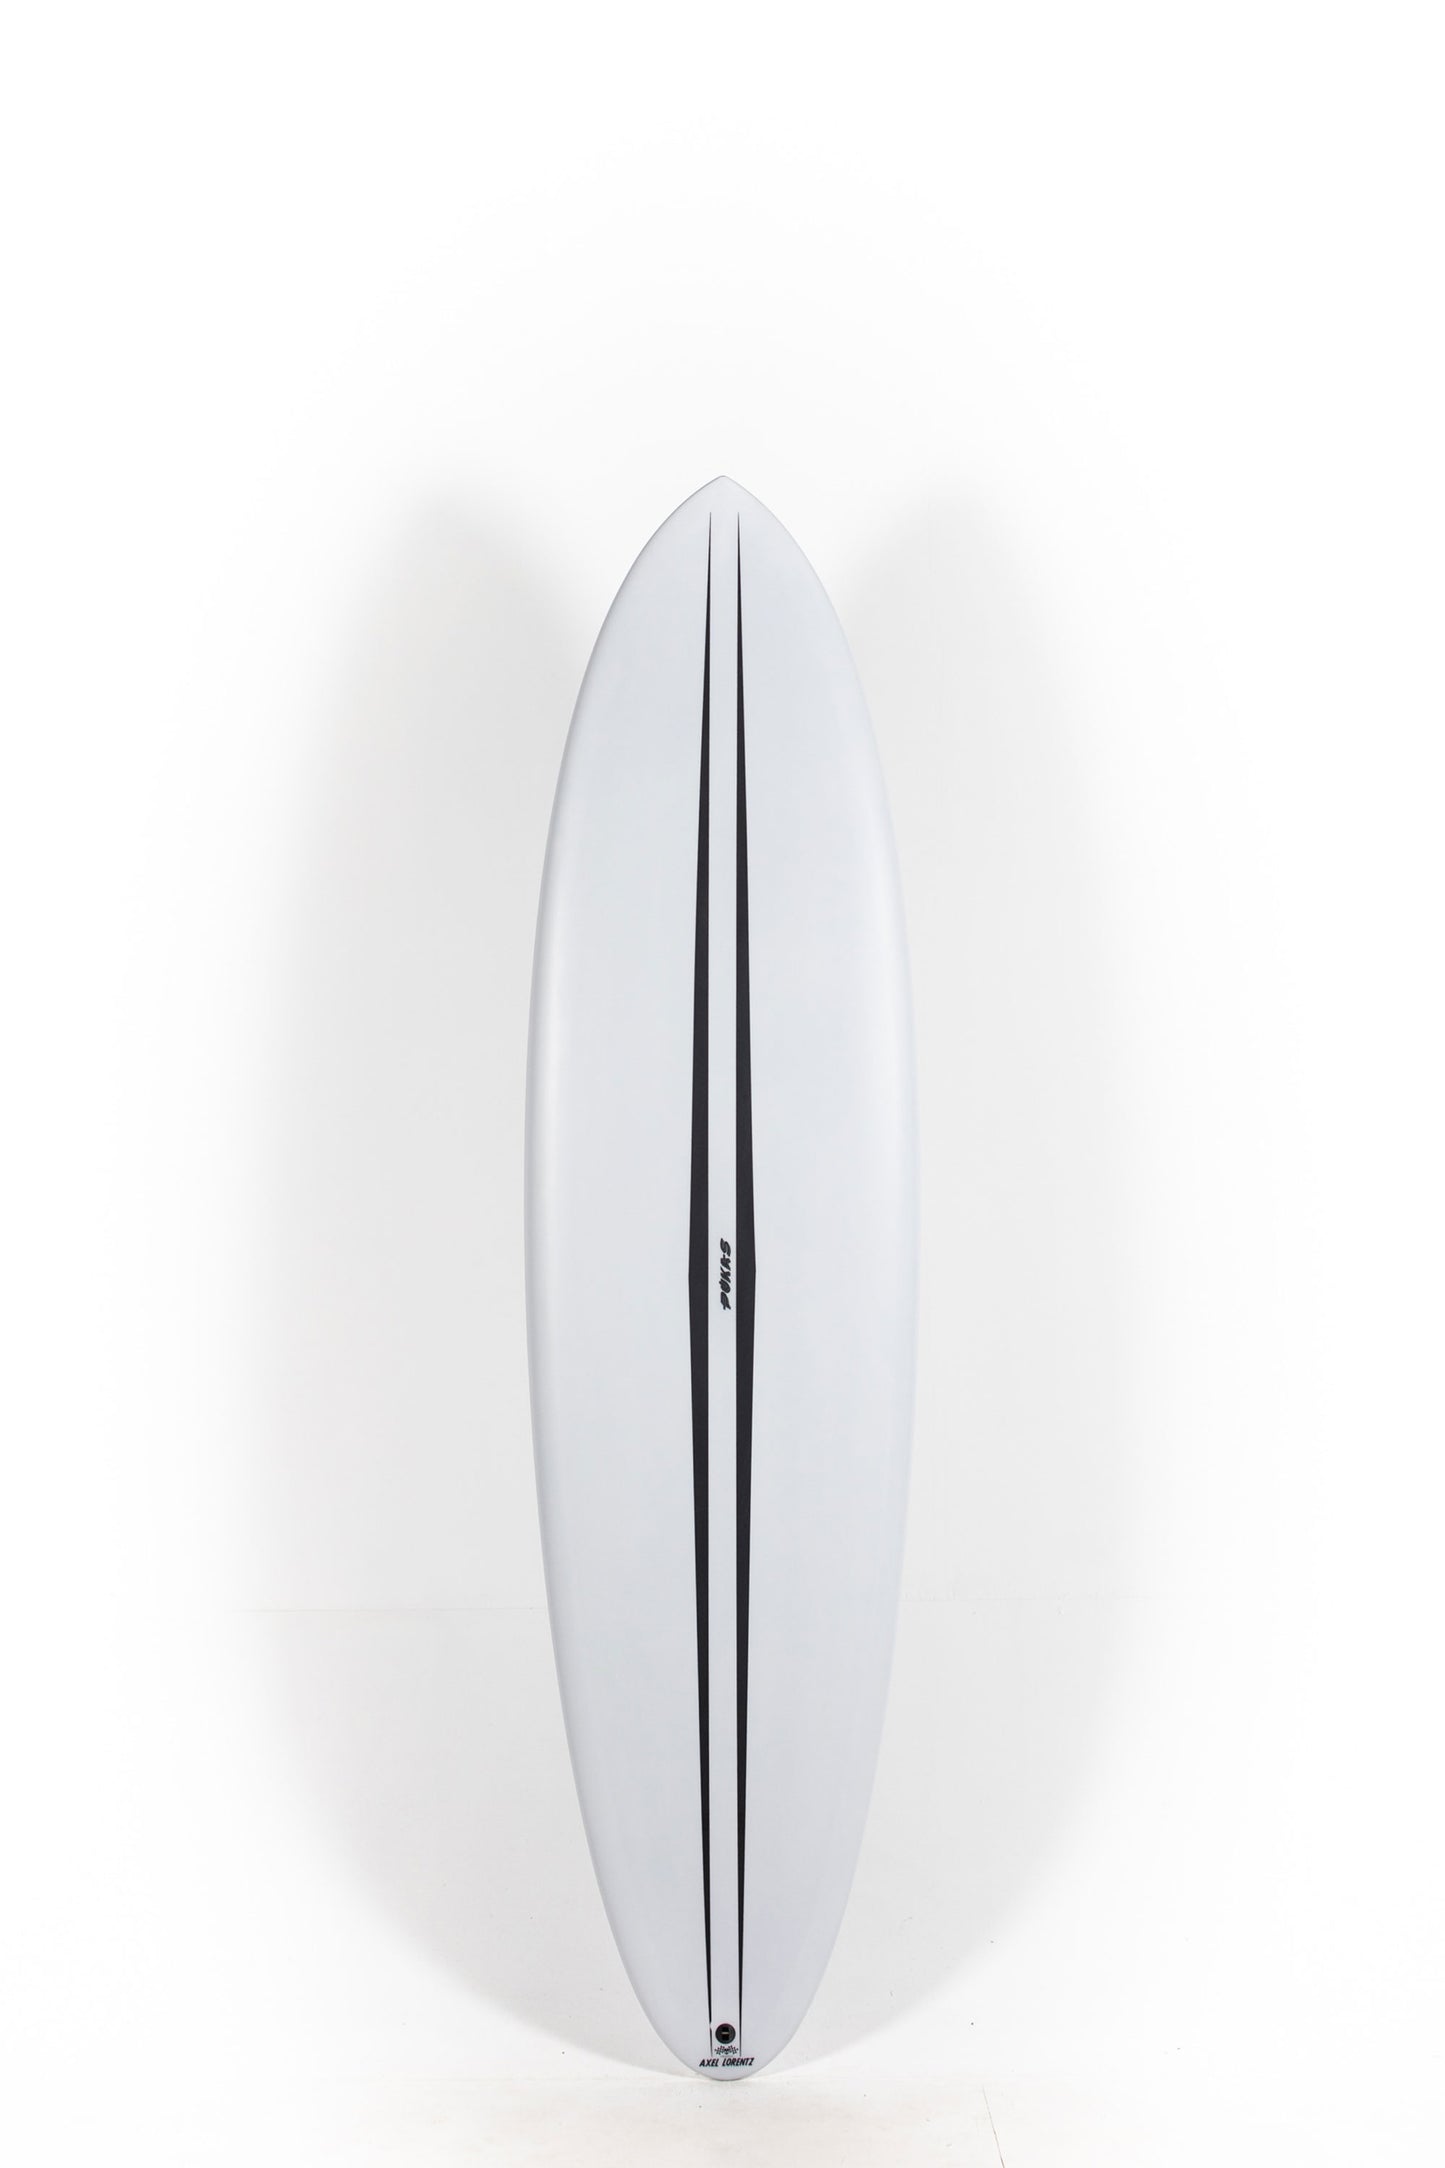 Pukas-Surf-Shop-Pukas-Surfboards-La-Cote-Axel-Lorentz